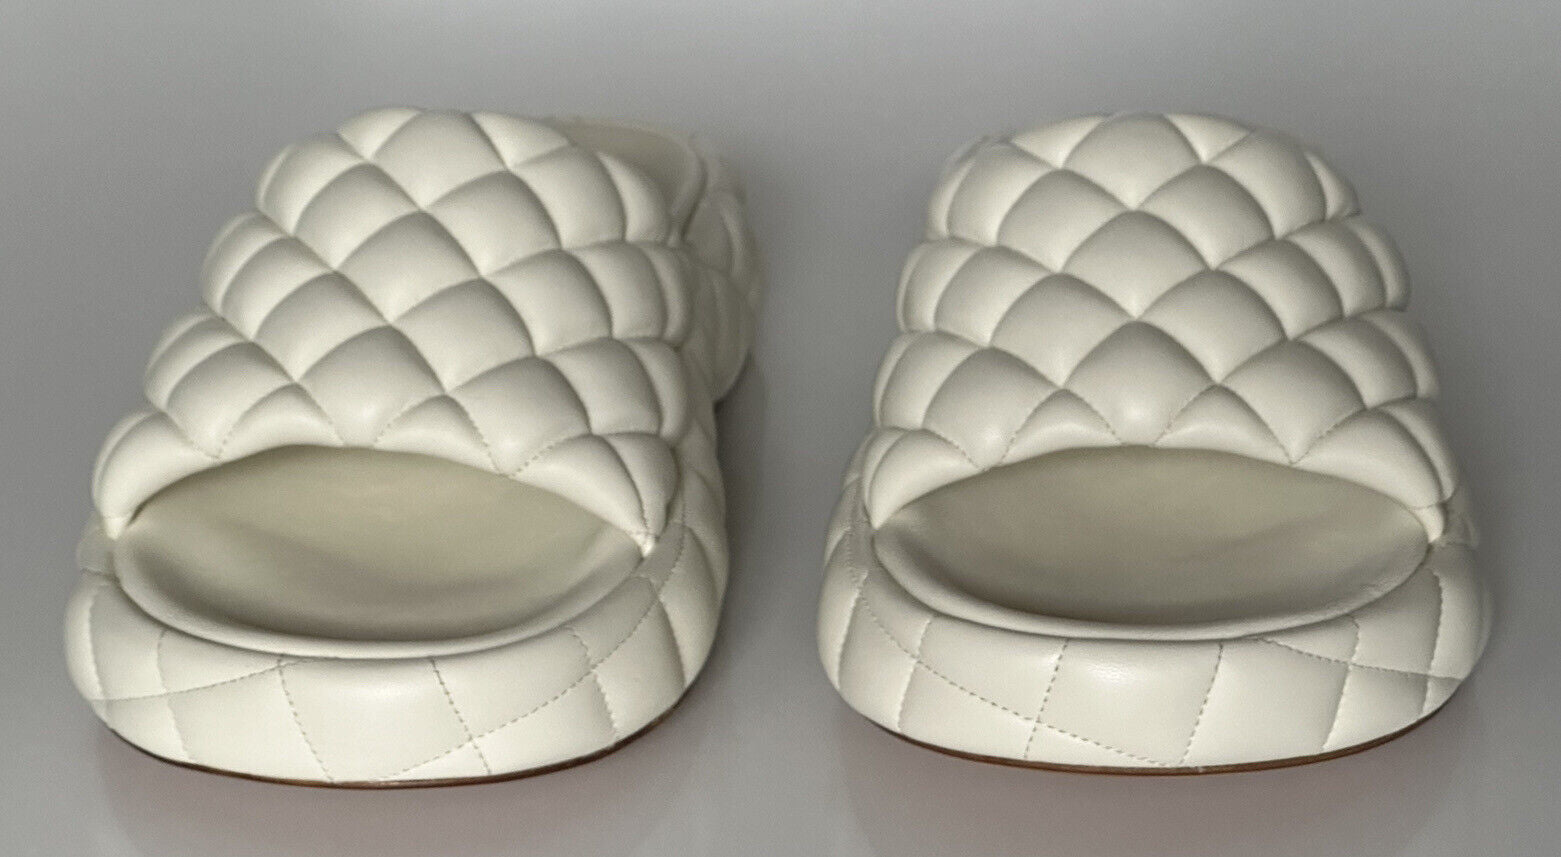 NIB Белые кожаные стеганые сандалии Bottega Veneta за 1450 долларов США 11 США 708885 IT